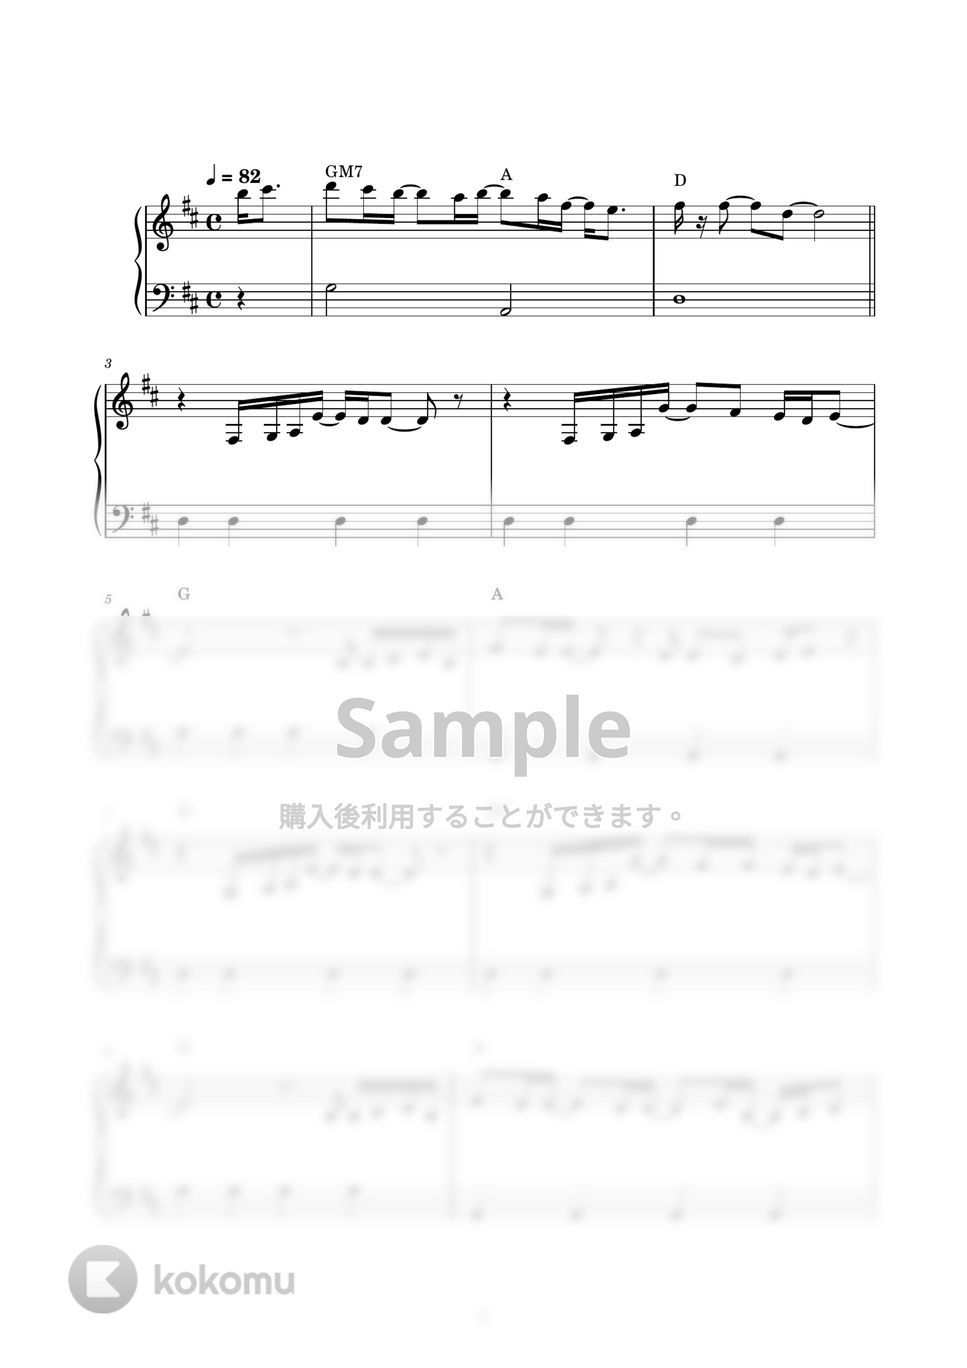 幾田りら - レンズ (ピアノ楽譜 / かんたん両手 / 歌詞付き / ドレミ付き / 初心者向き) by piano.tokyo